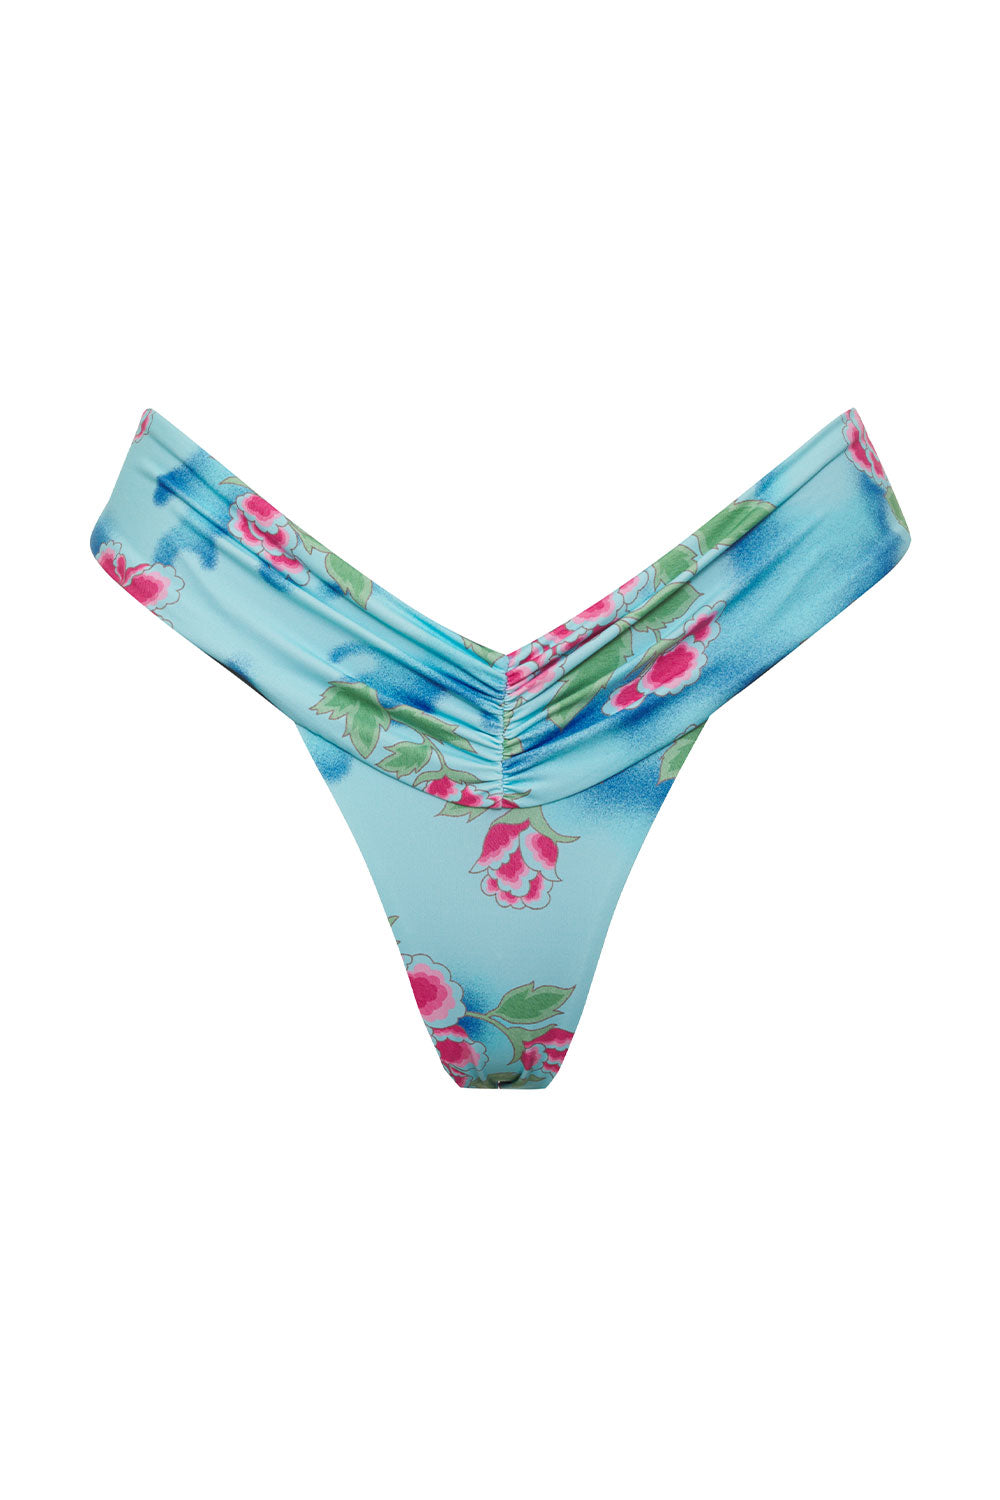 Dexter Floral Thong Bikini Bottom - Blue Daiquiri